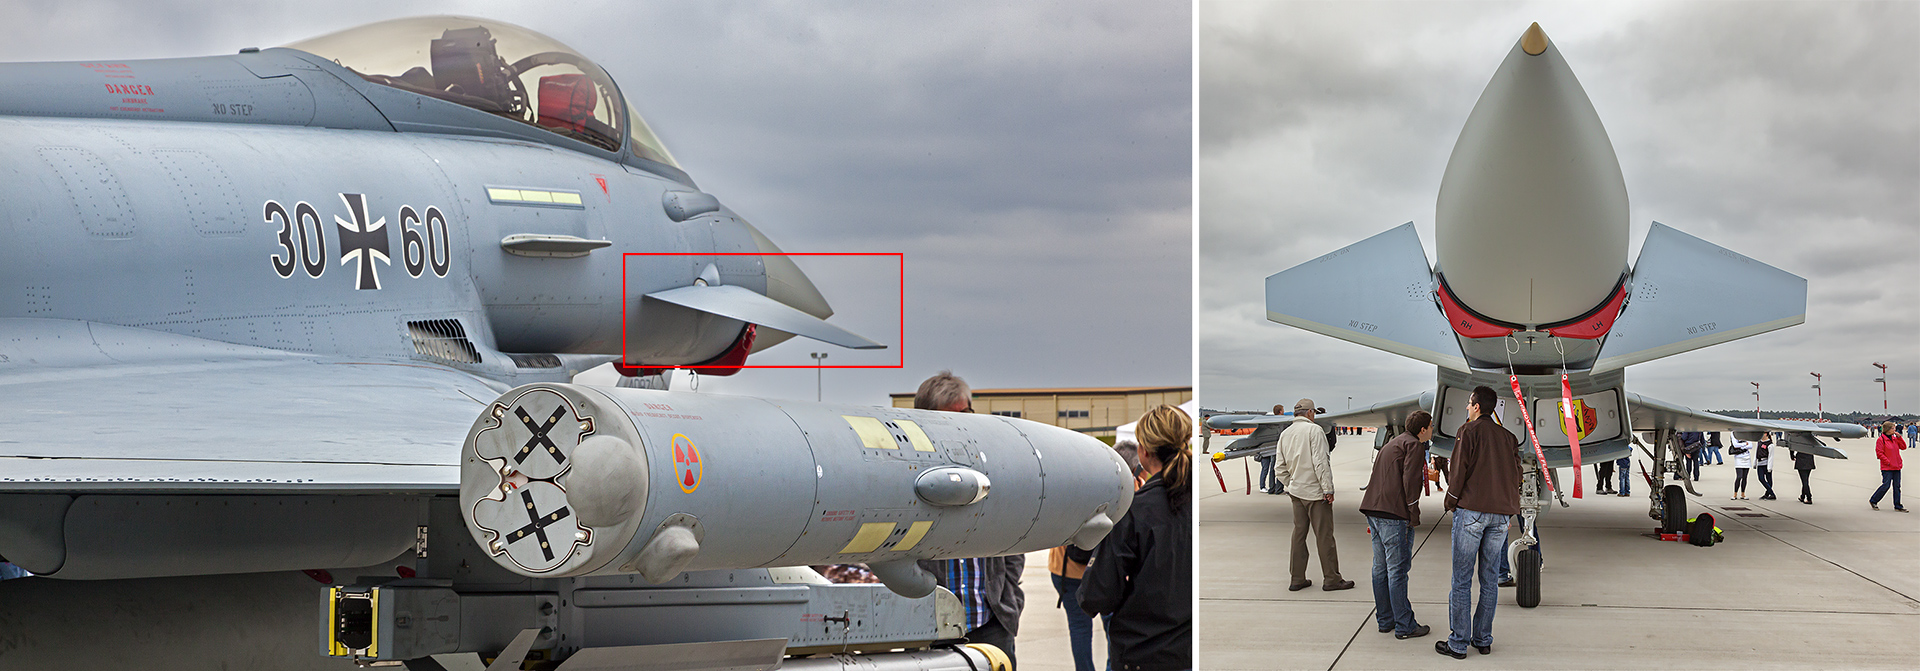 Eurofighter der Bundesluftwaffe, aufgenommen auf der US Airbase in Spangdahlem/Eifel.